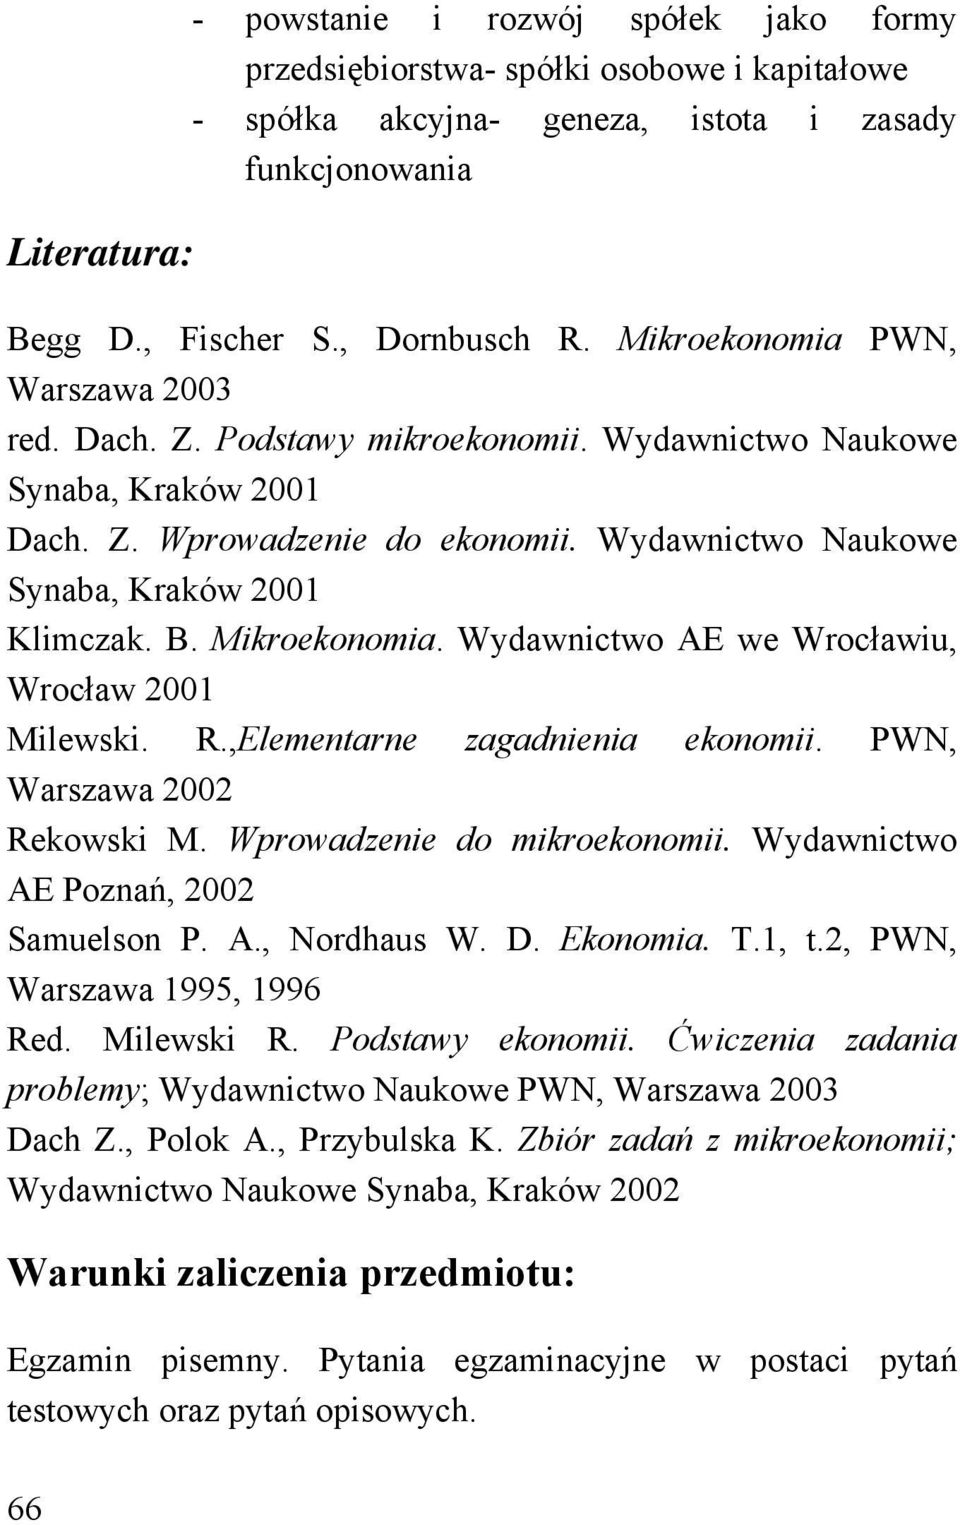 Mikroekonomia. Wydawnictwo AE we Wrocławiu, Wrocław 2001 Milewski. R.,Elementarne zagadnienia ekonomii. PWN, Warszawa 2002 Rekowski M. Wprowadzenie do mikroekonomii.